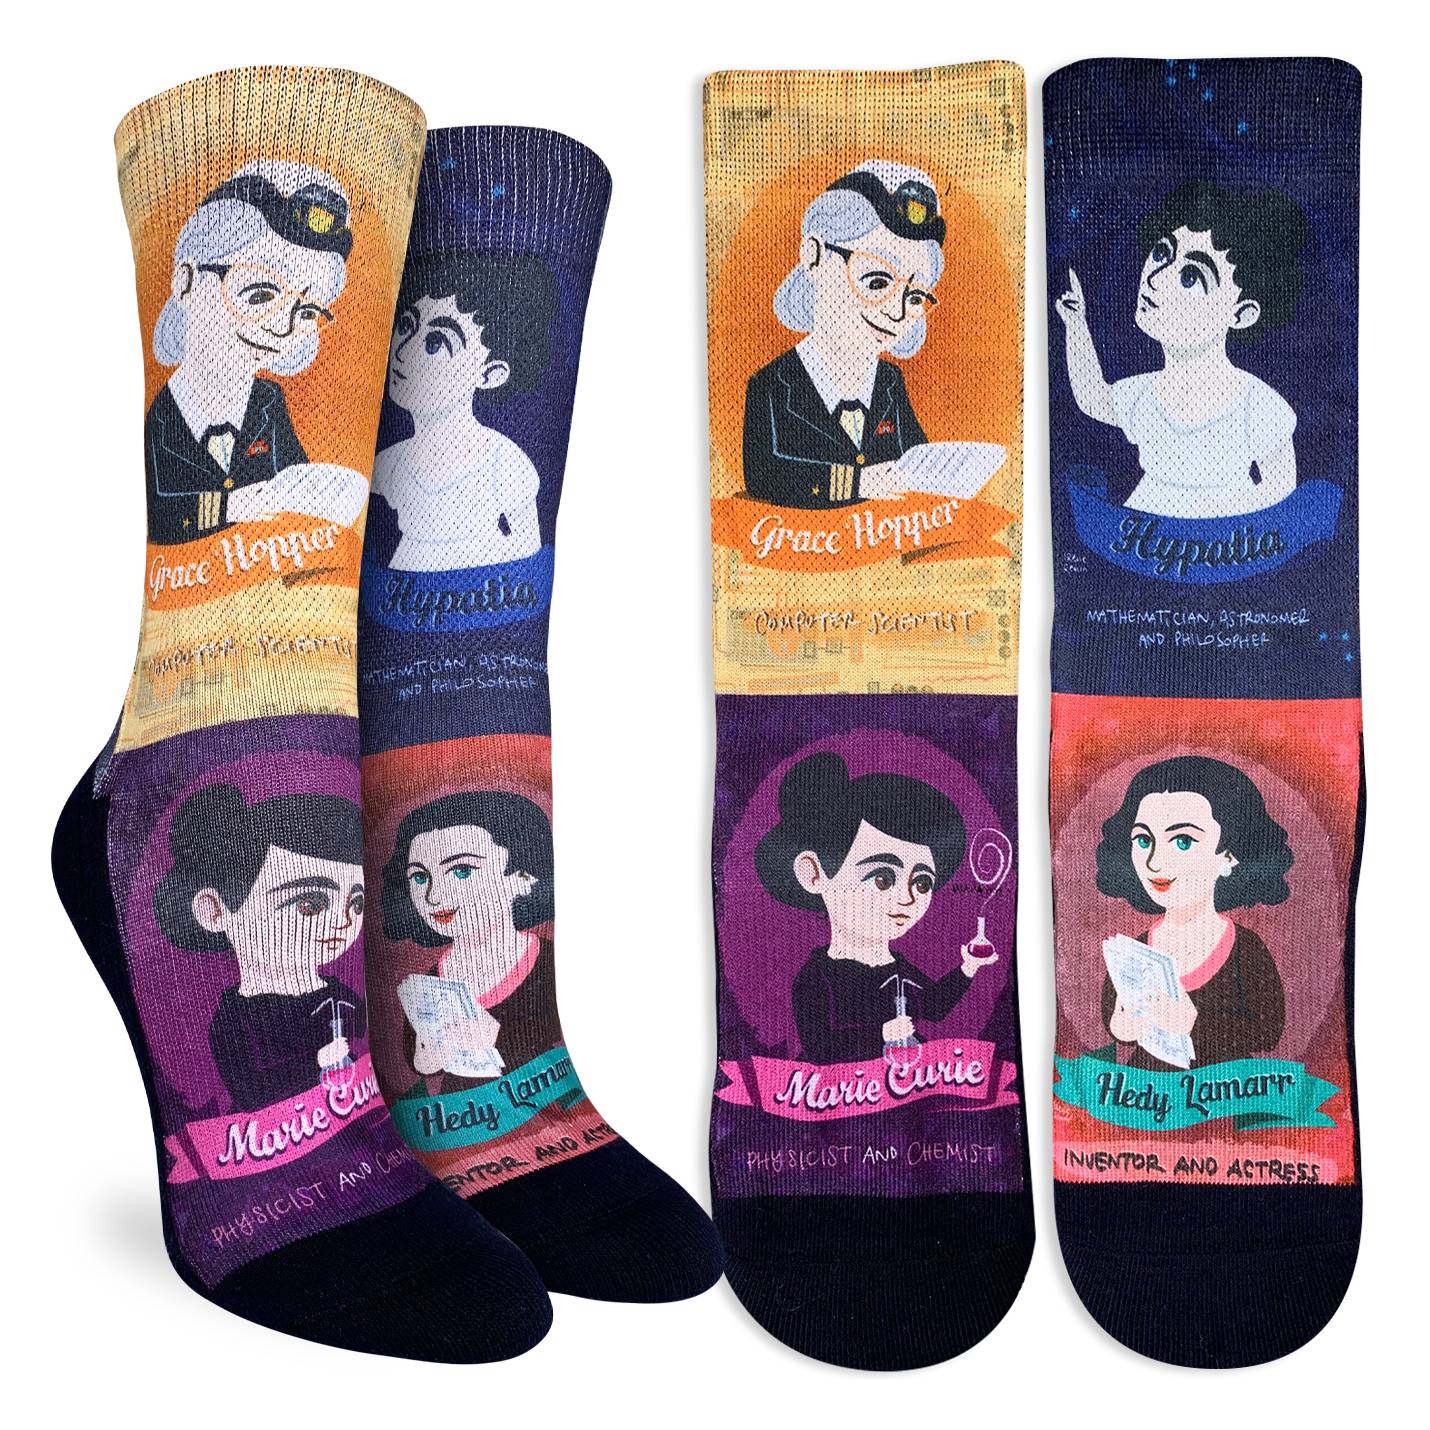 Women's Greatest Women in Science Socks - Shoe Size 5-9